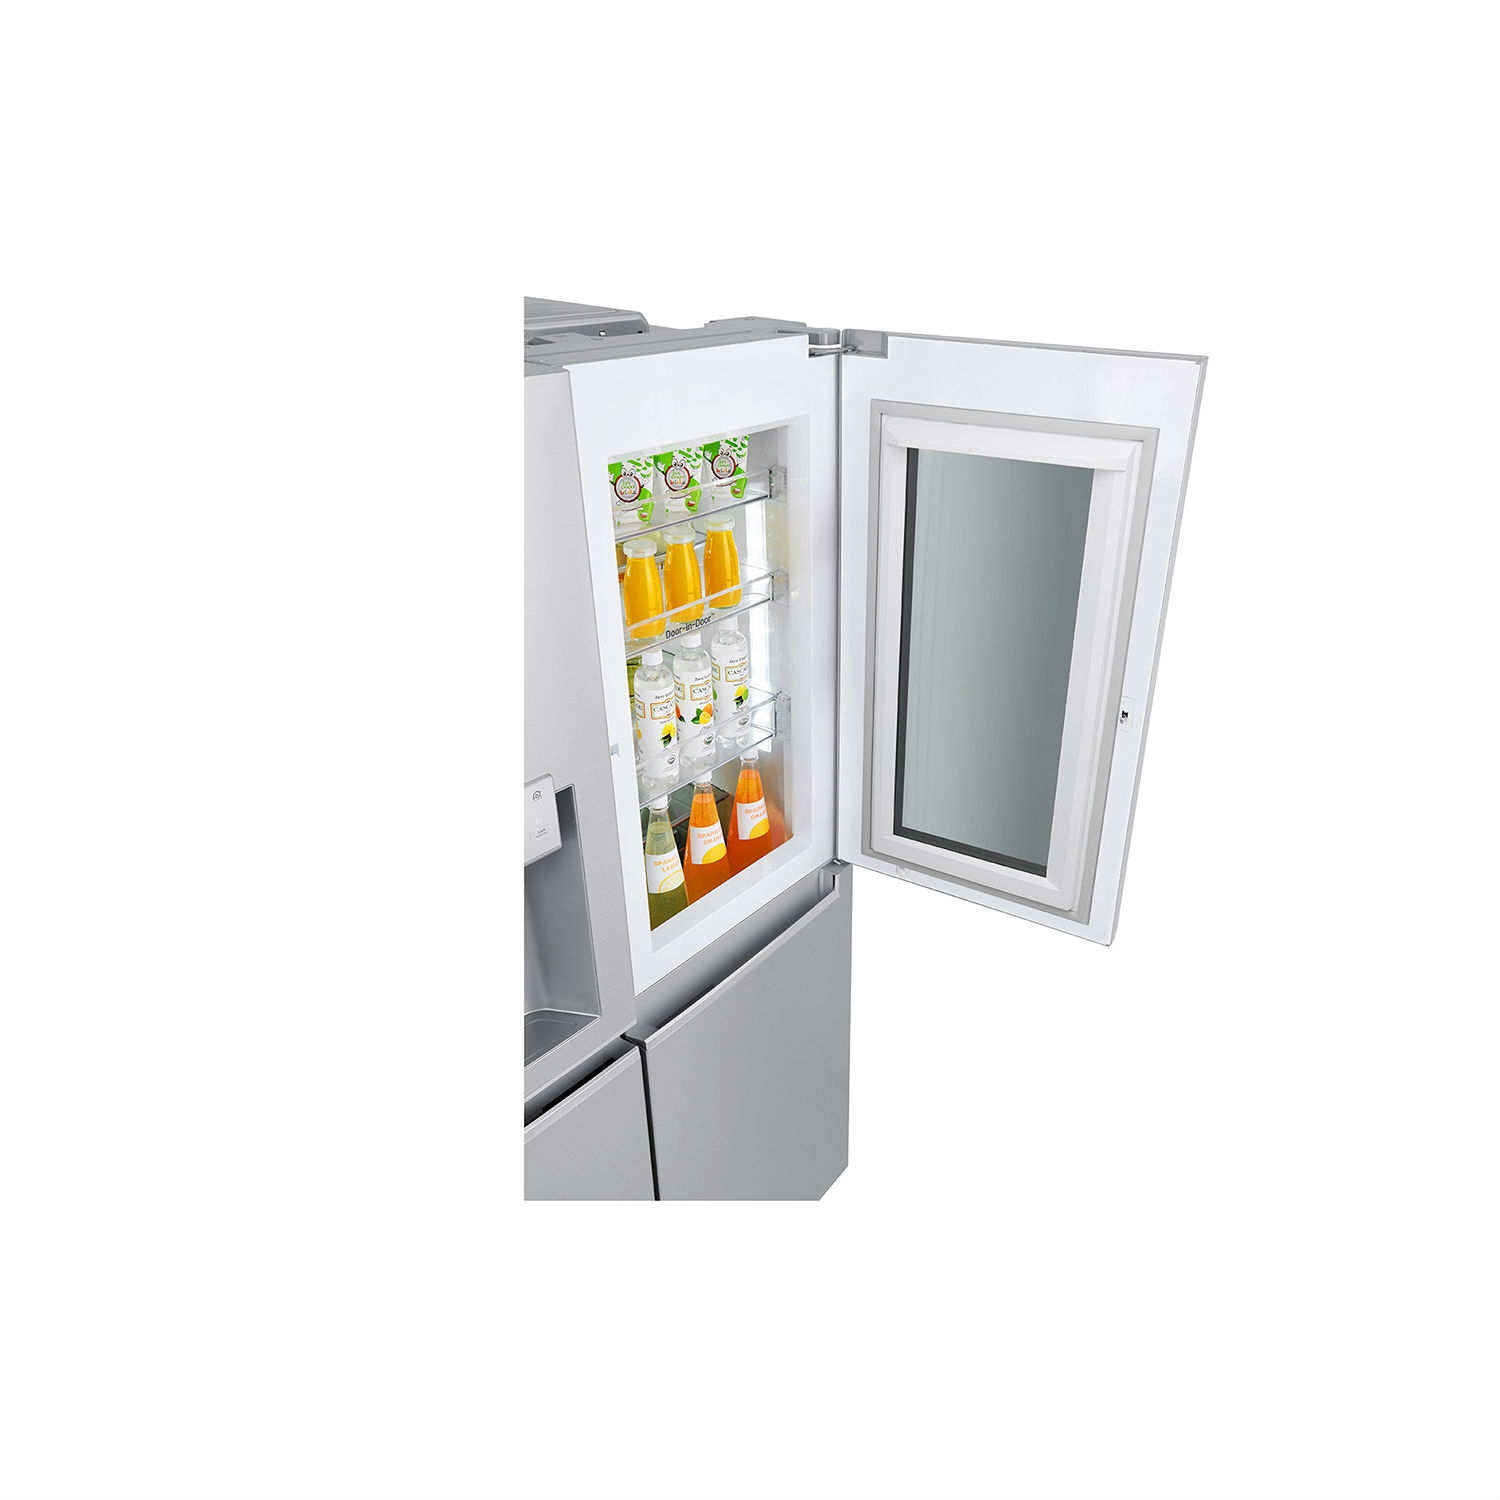 LG ELECTRONICS InstaView Door-in-Door American Style Fridge Freezer - PREMIUM STEEL - A++ Energy Rated - 1